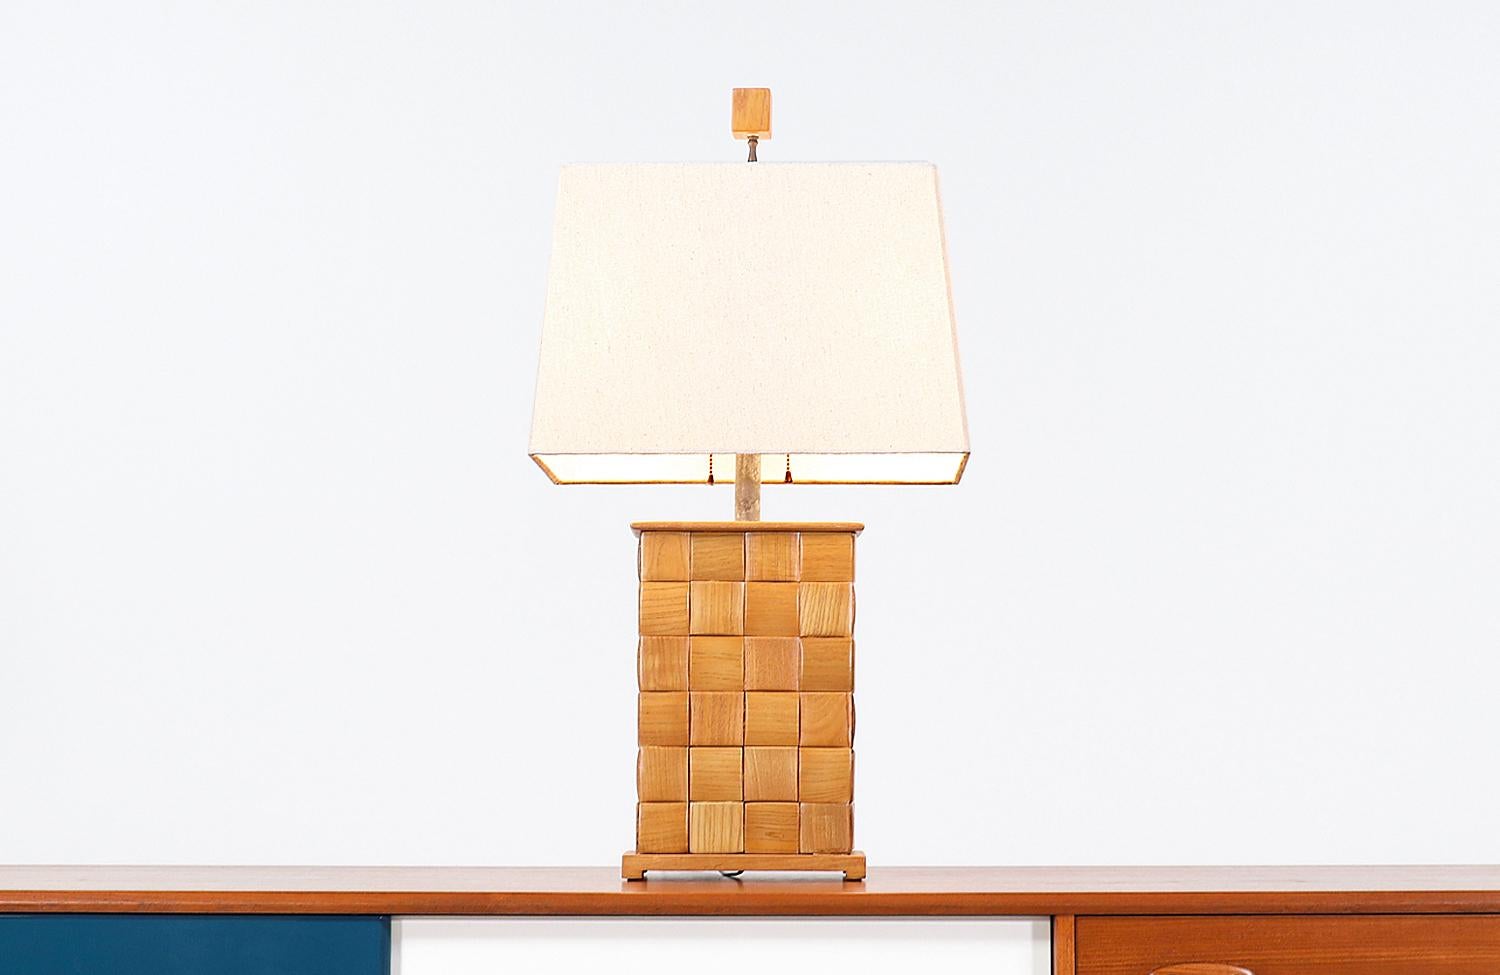 Seltene kalifornische moderne Tischlampe, entworfen von Paul Laszlo für Brown Saltman in den Vereinigten Staaten um 1950. Diese spektakuläre Lampe hat einen Korpus aus Eichenholz mit Laszlos charakteristischem Brustmuster, wie man es von seiner